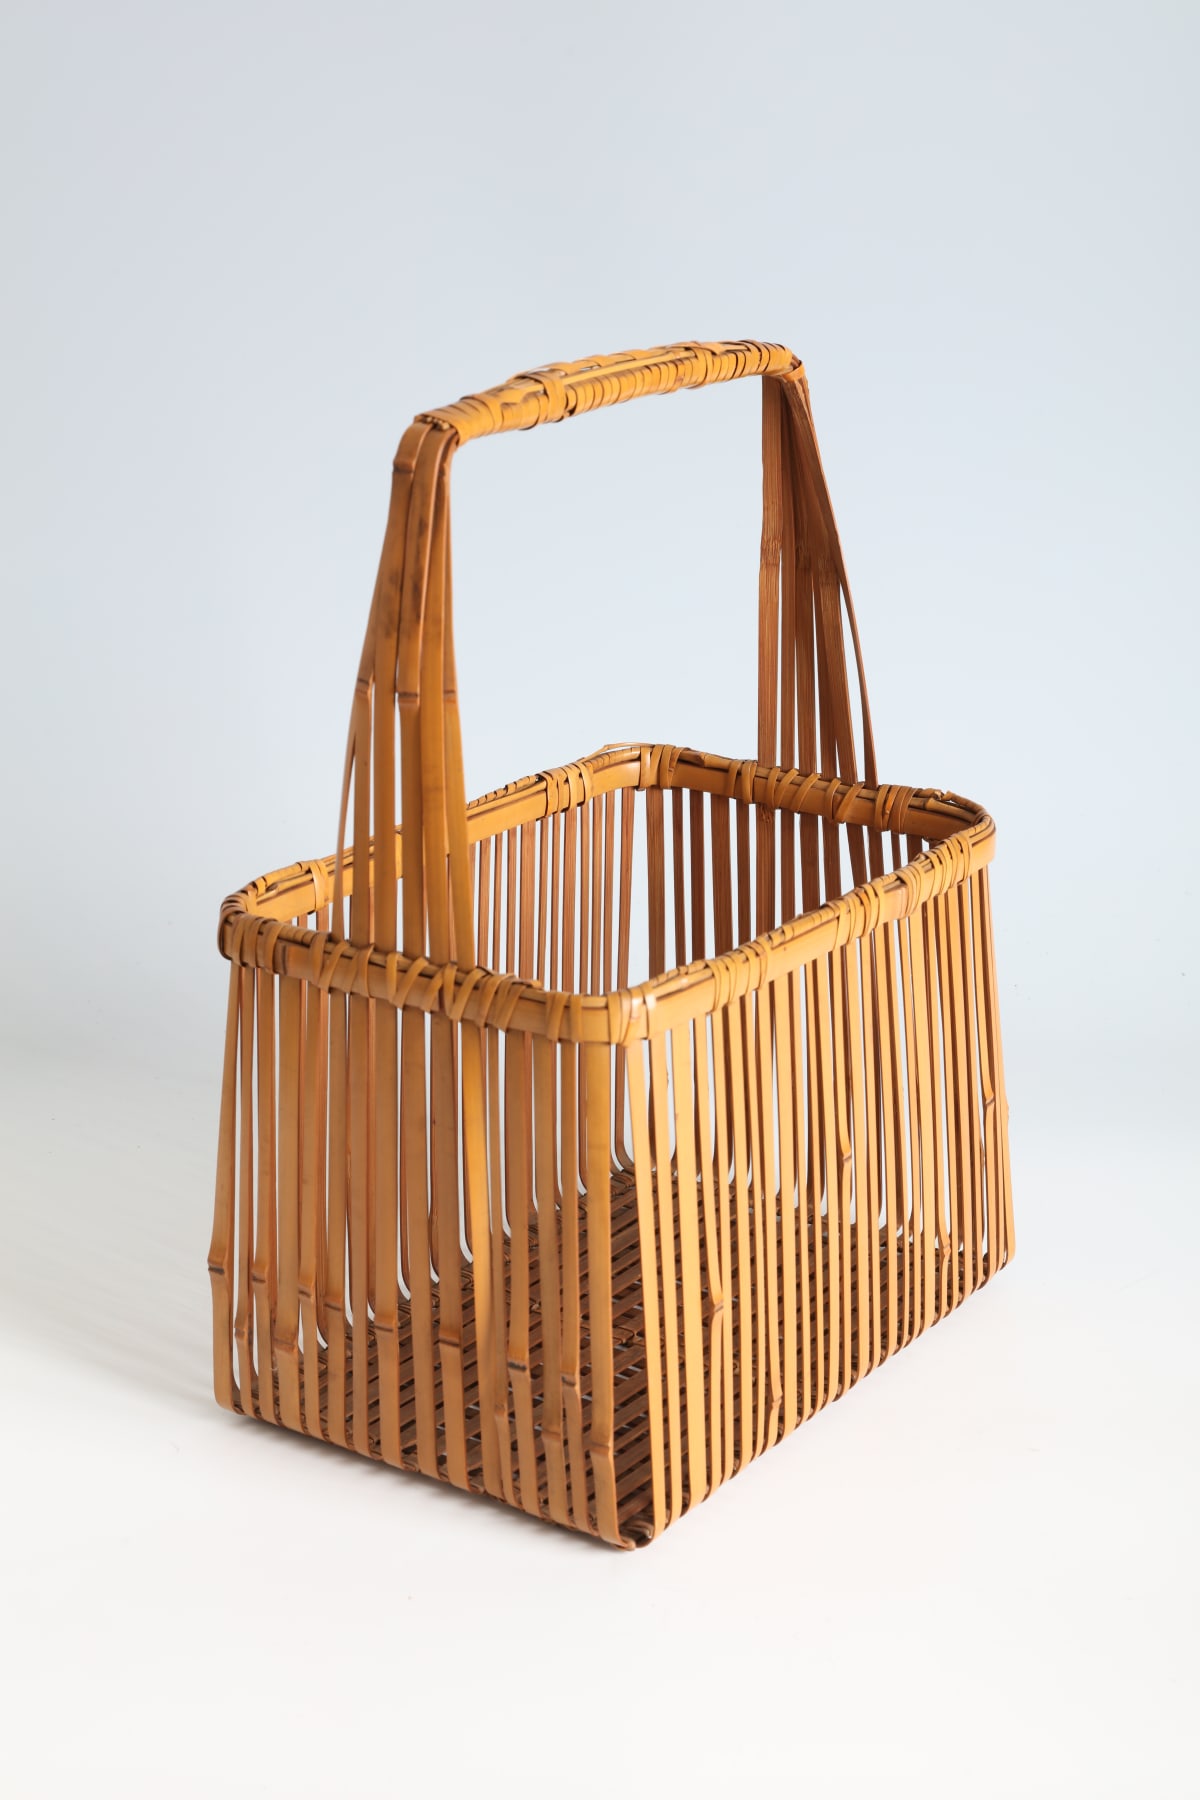 Baskets | Thomsen Gallery